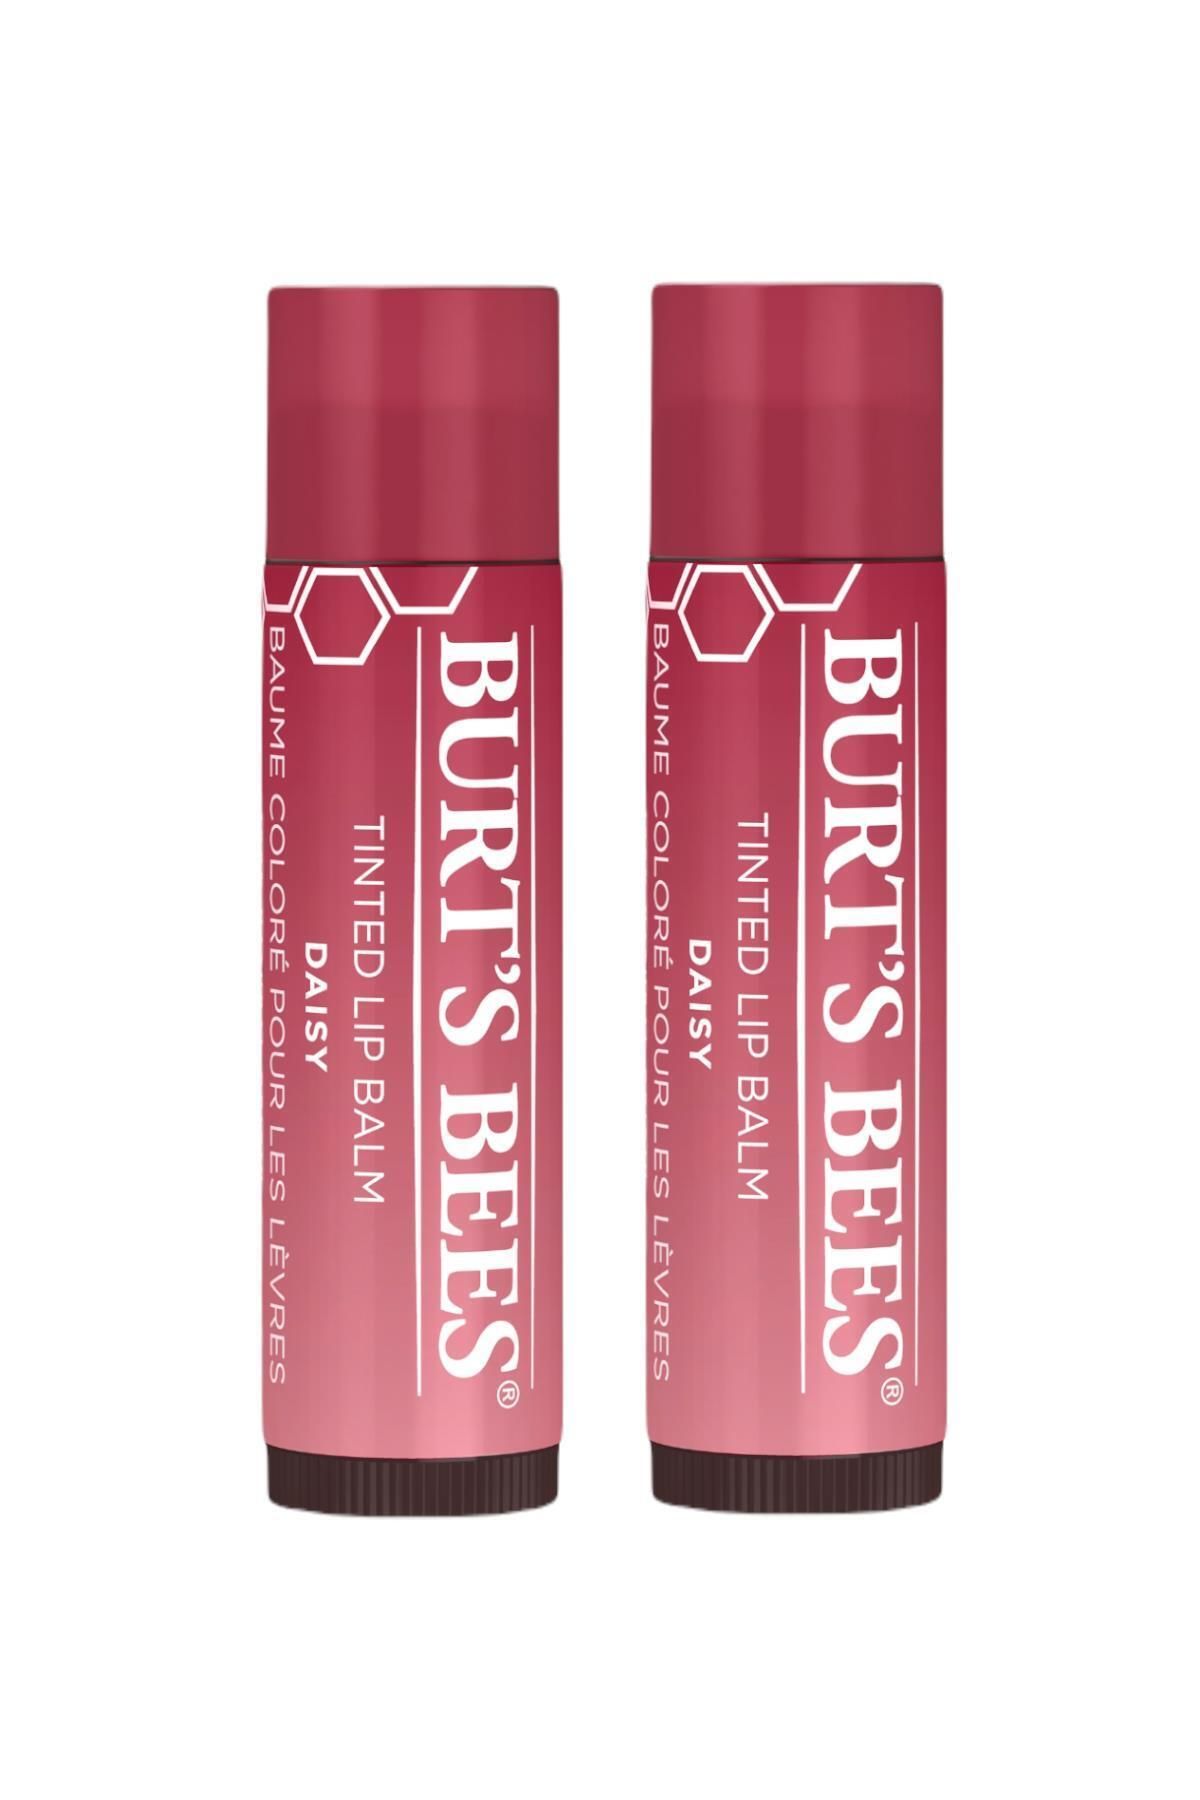 Burt's Bees Renkli Dudak Bakım Kremi Mercan Çiçeği - Tinted Lip Balm Daisy 4,25 Gr X2 Adet